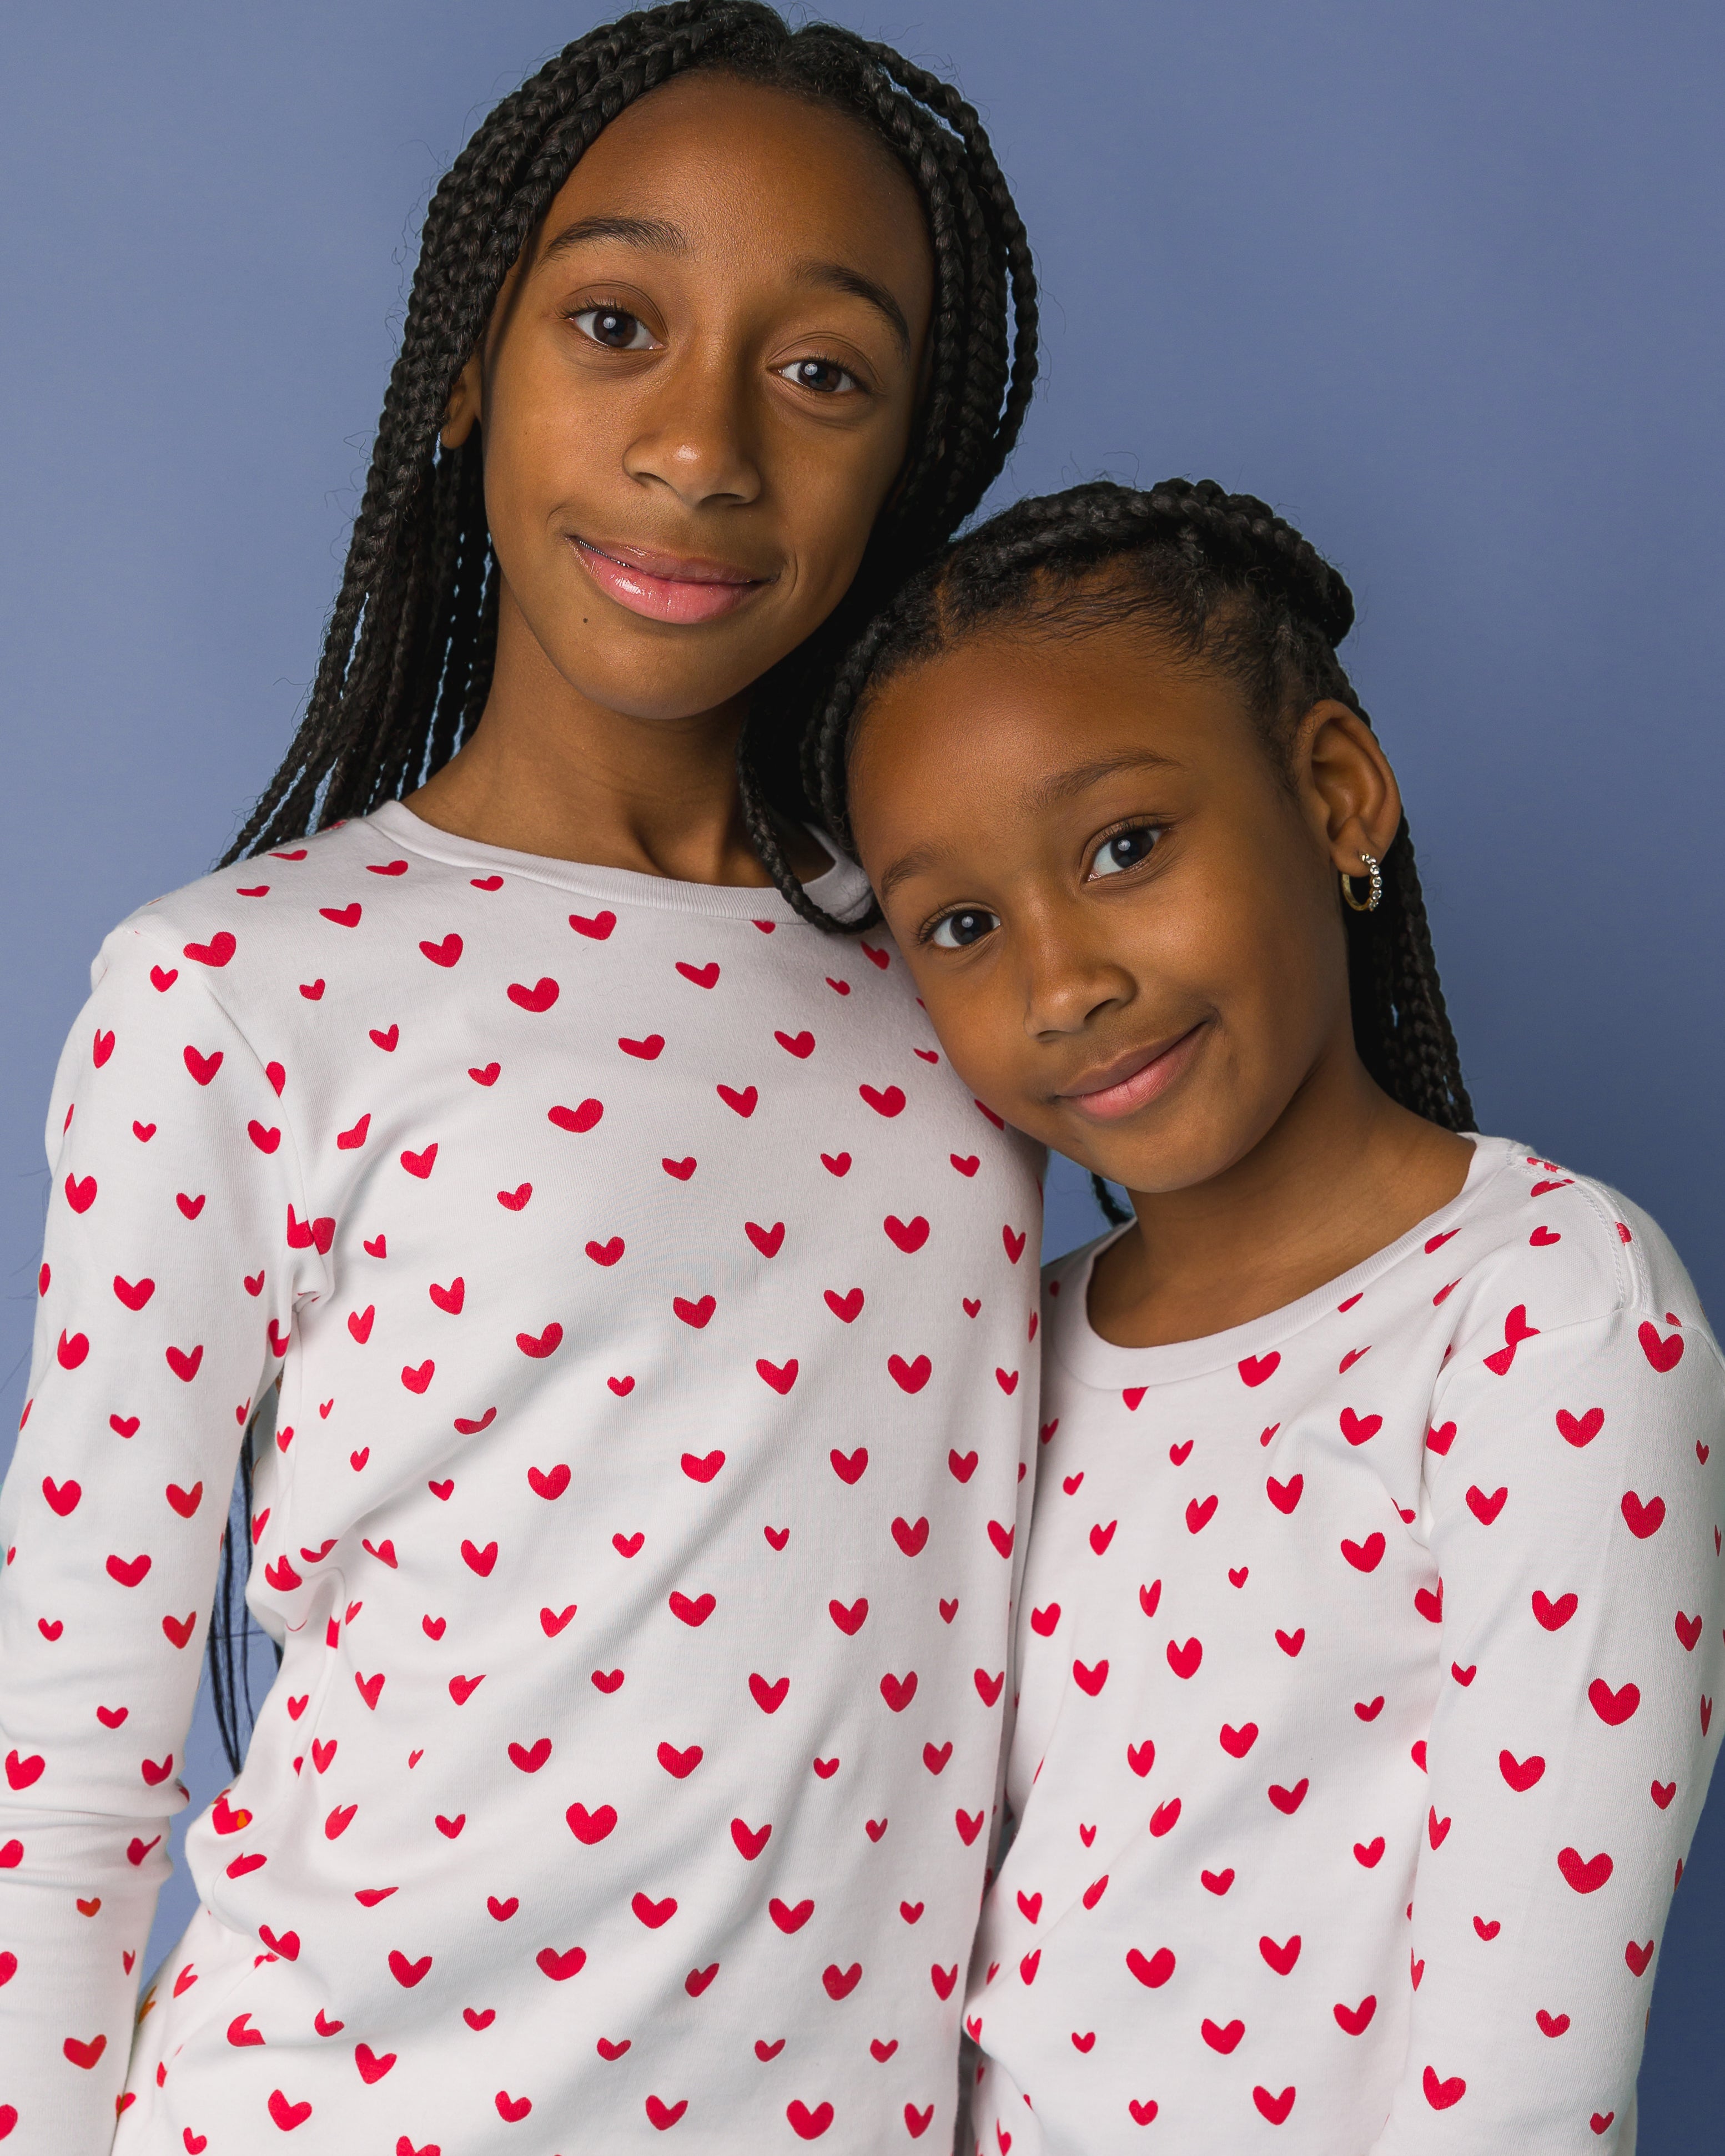 The Organic Long Sleeve Pajama Set [Poppy Jelly Bean Hearts]